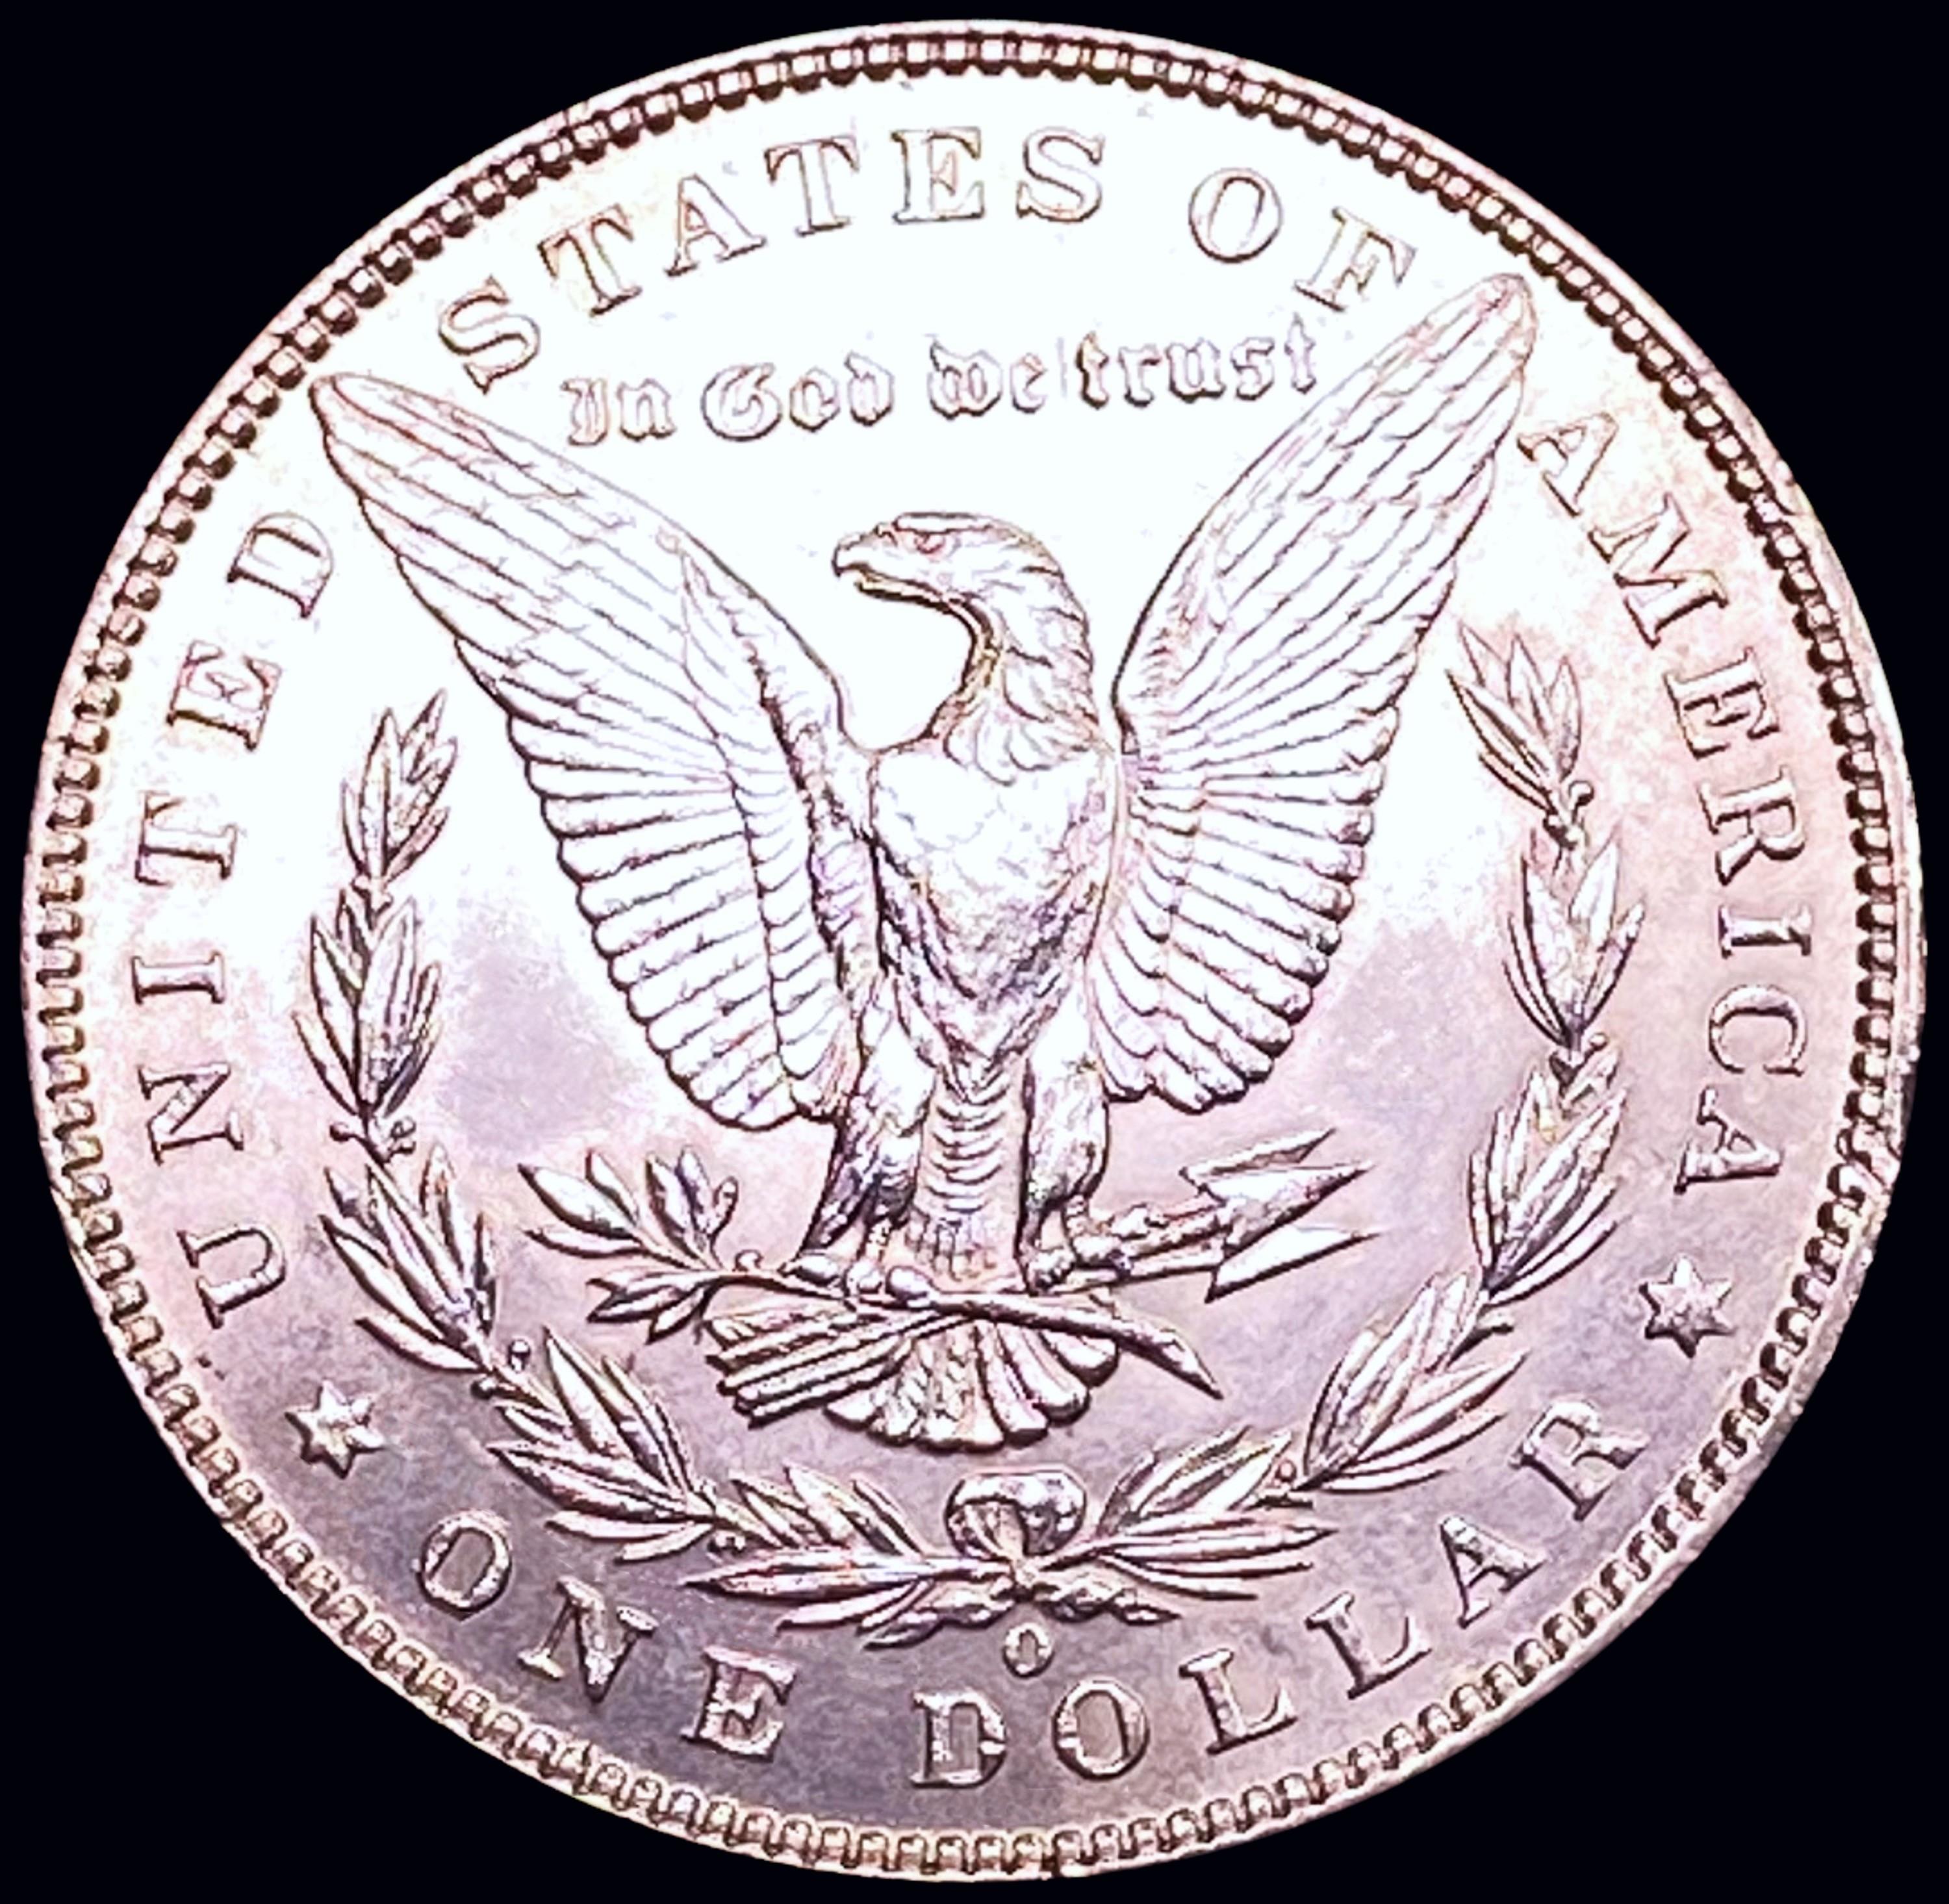 1895-O Morgan Silver Dollar UNCIRCULATED